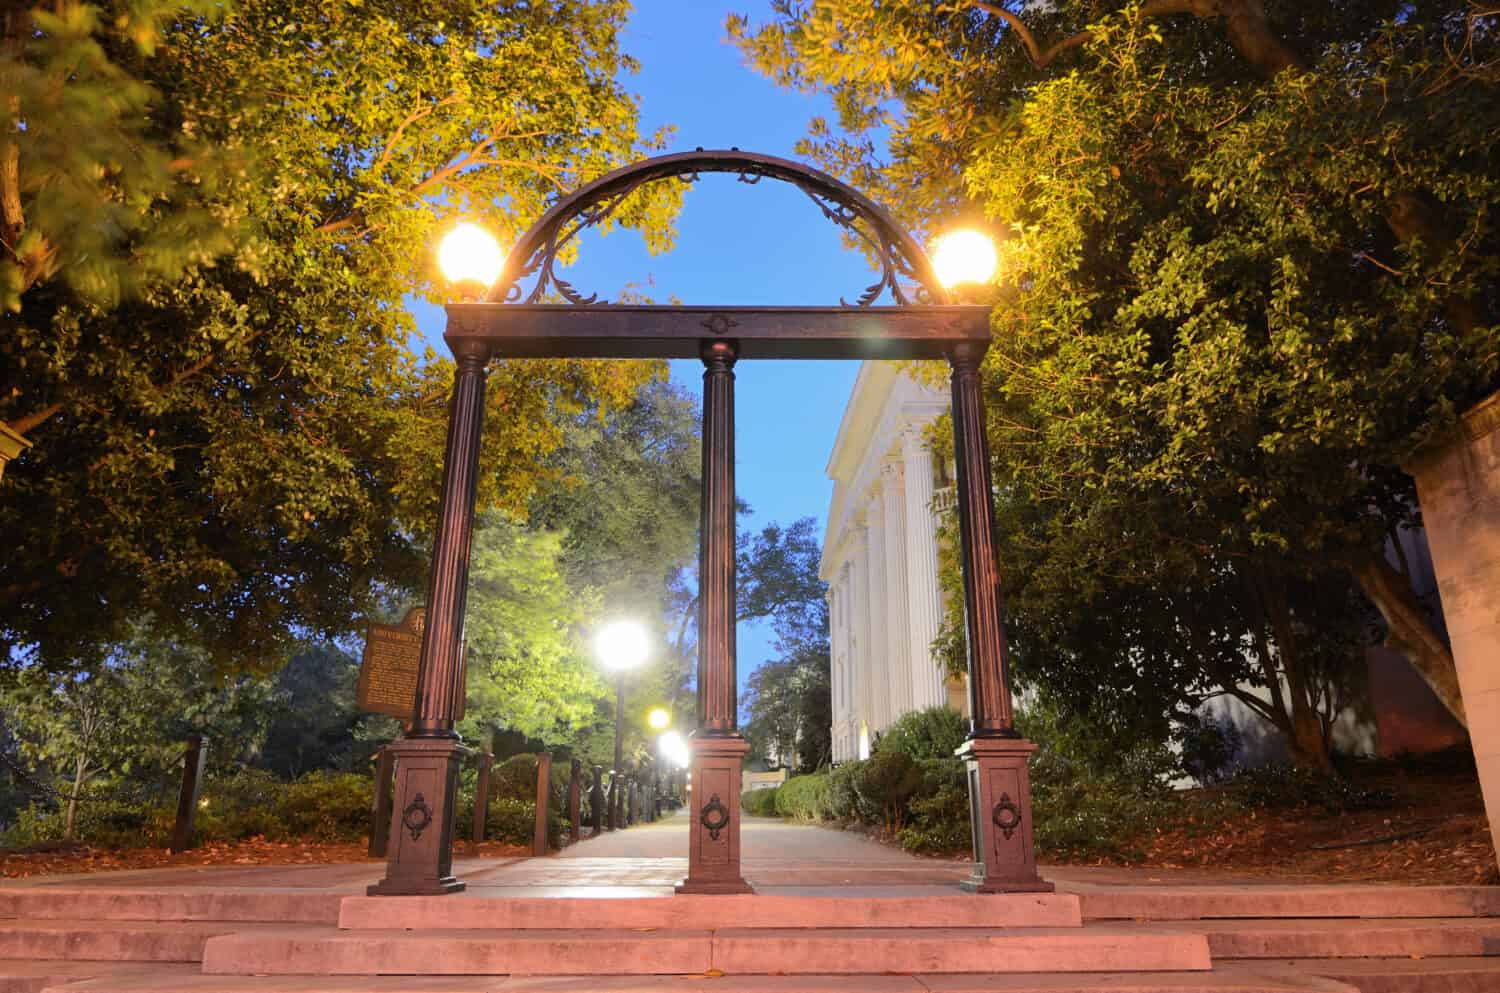 Storico arco in acciaio nel campus dell'Università della Georgia ad Atene, Georgia, Stati Uniti d'America.